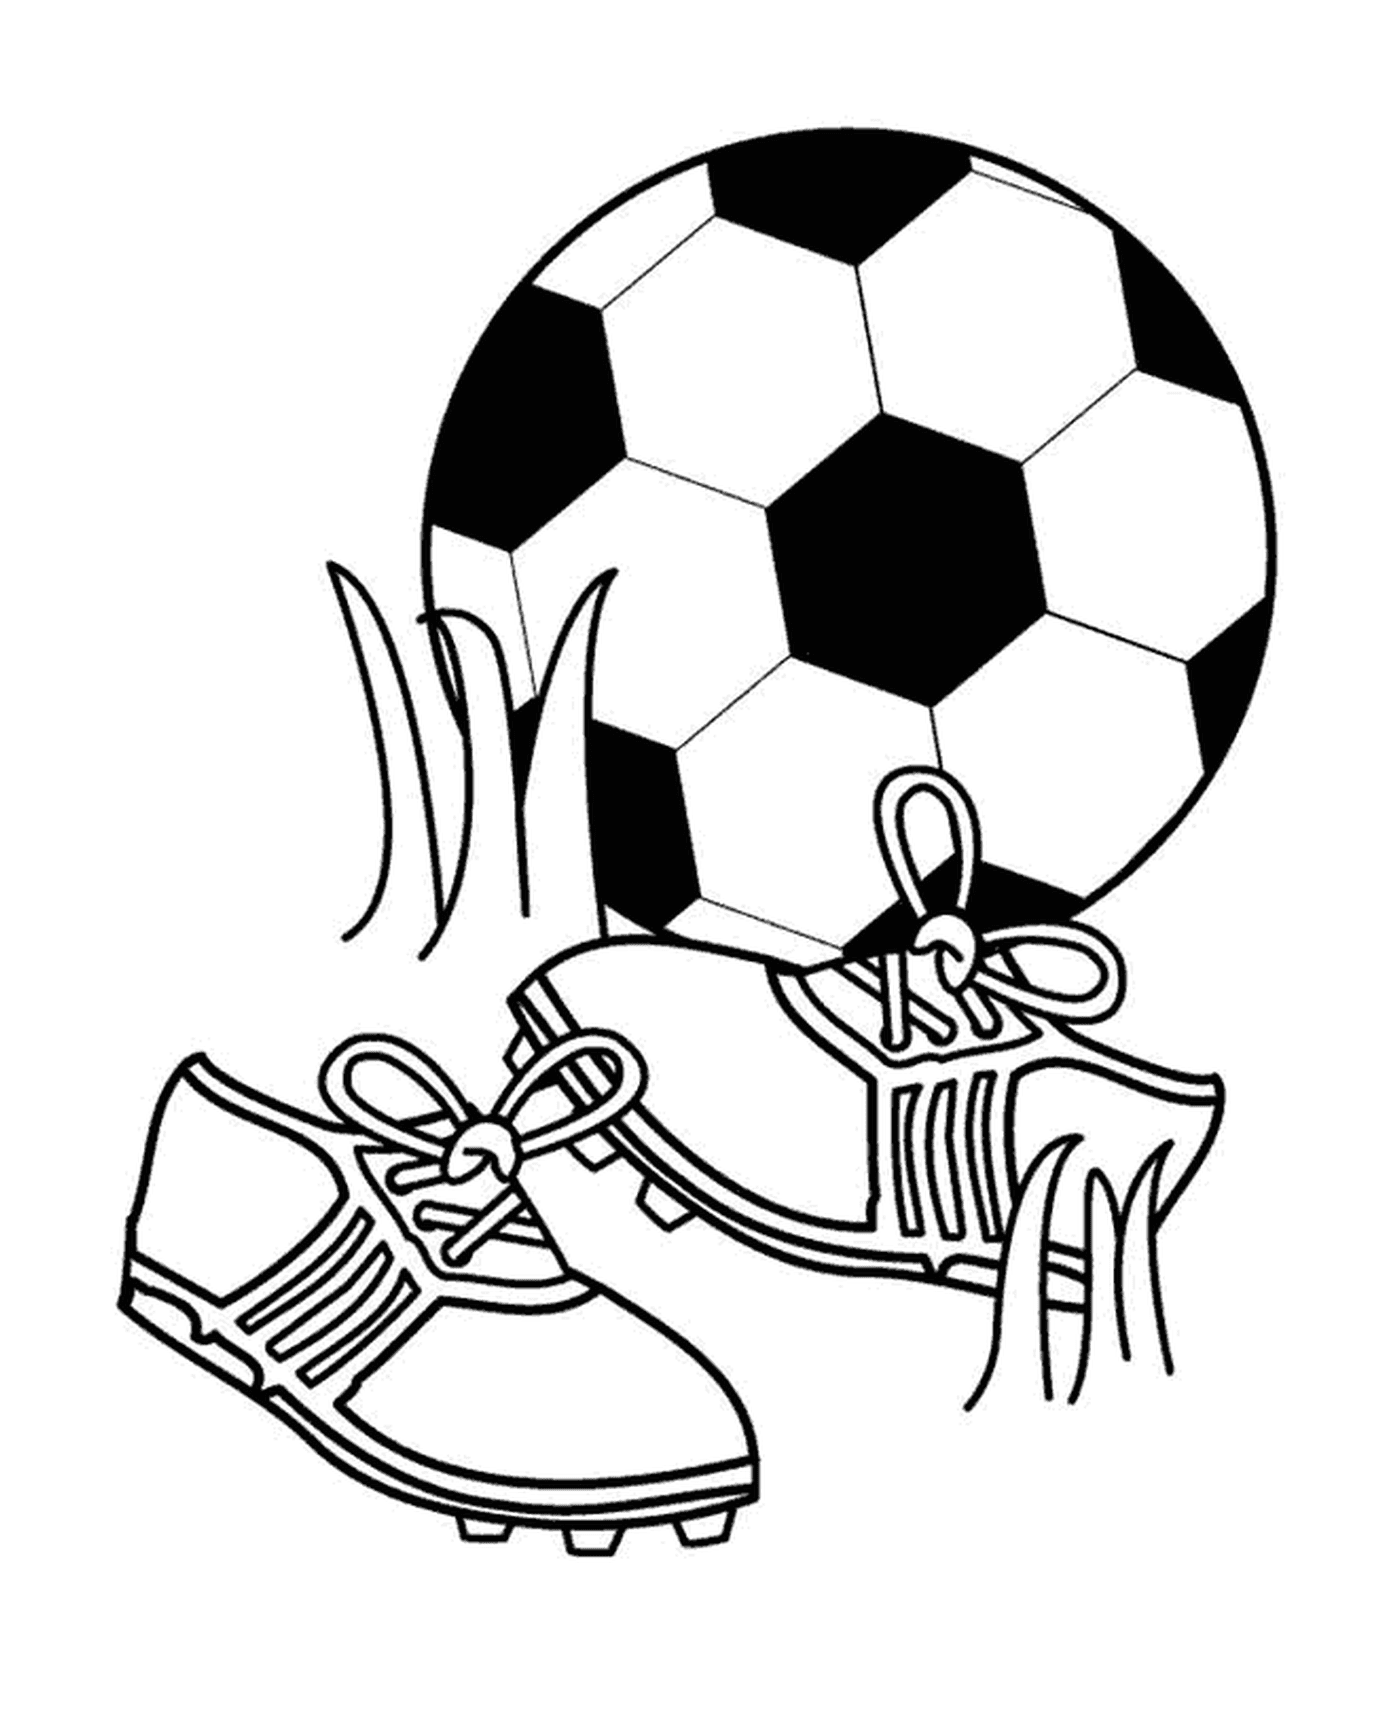  Спорт, футбол и обувь 